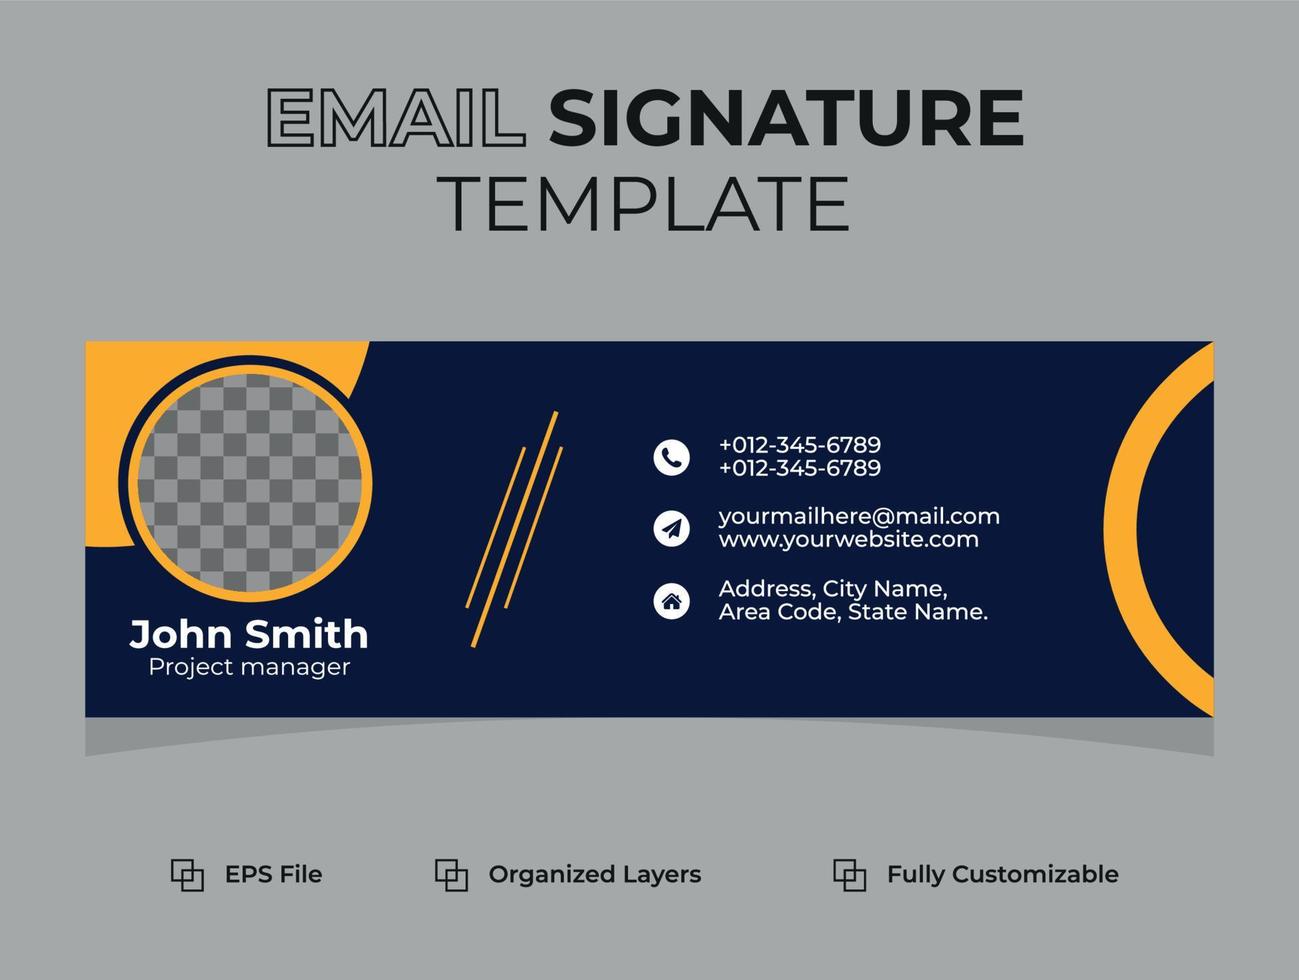 Corporate Modern E-Mail-Signatur oder E-Mail-Fußzeile und persönliches Social-Media-Cover-Design, flache, abstrakte, moderne und minimale Vorlage mit dunkelblauen, gelben, schwarzen Farben, Vektorgrafik-Layout. vektor